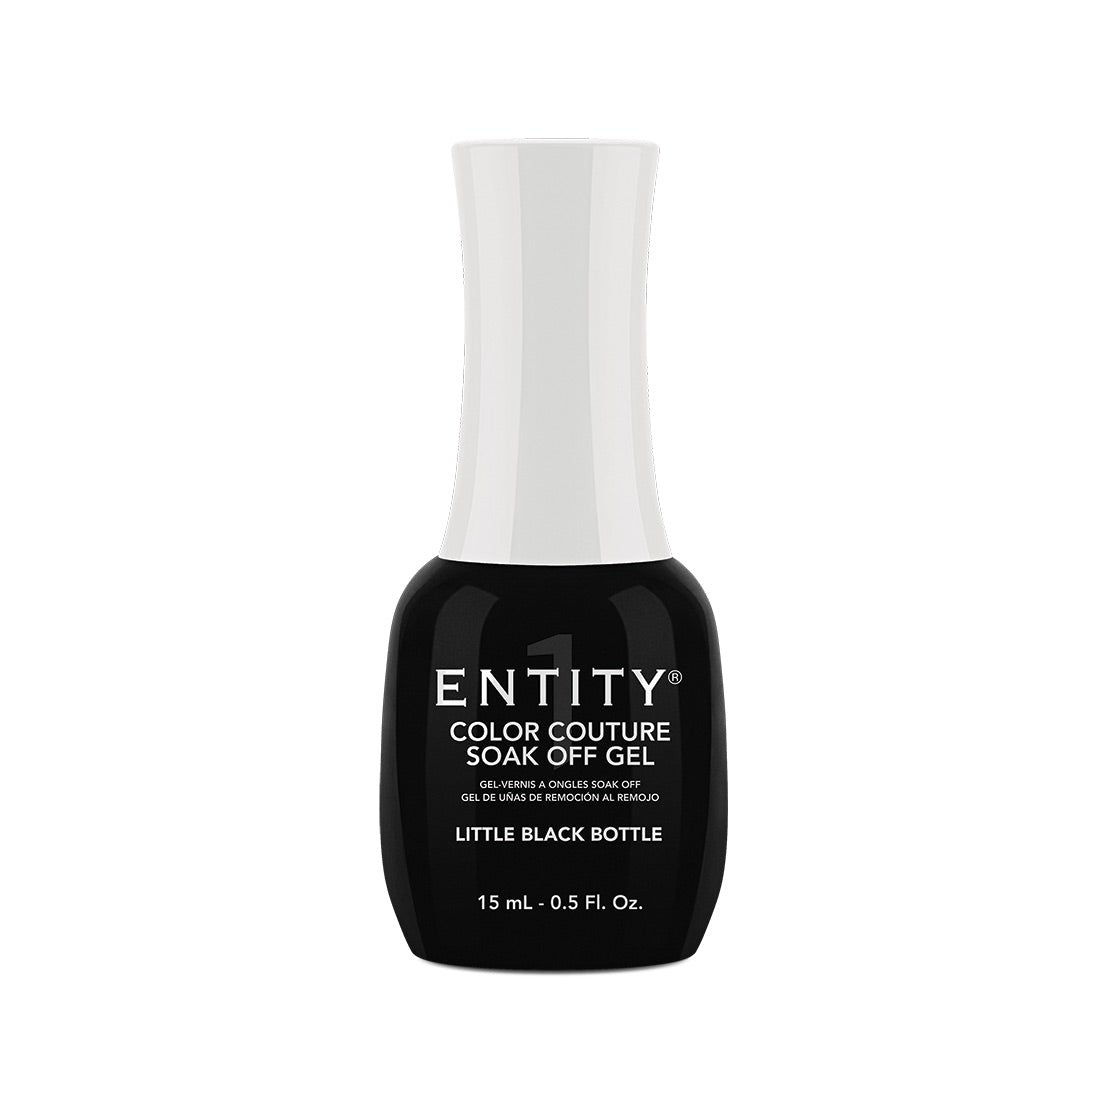 Entity Gel Soak Off - Little Black Bottle 15 mL/0.5 Fl. Oz